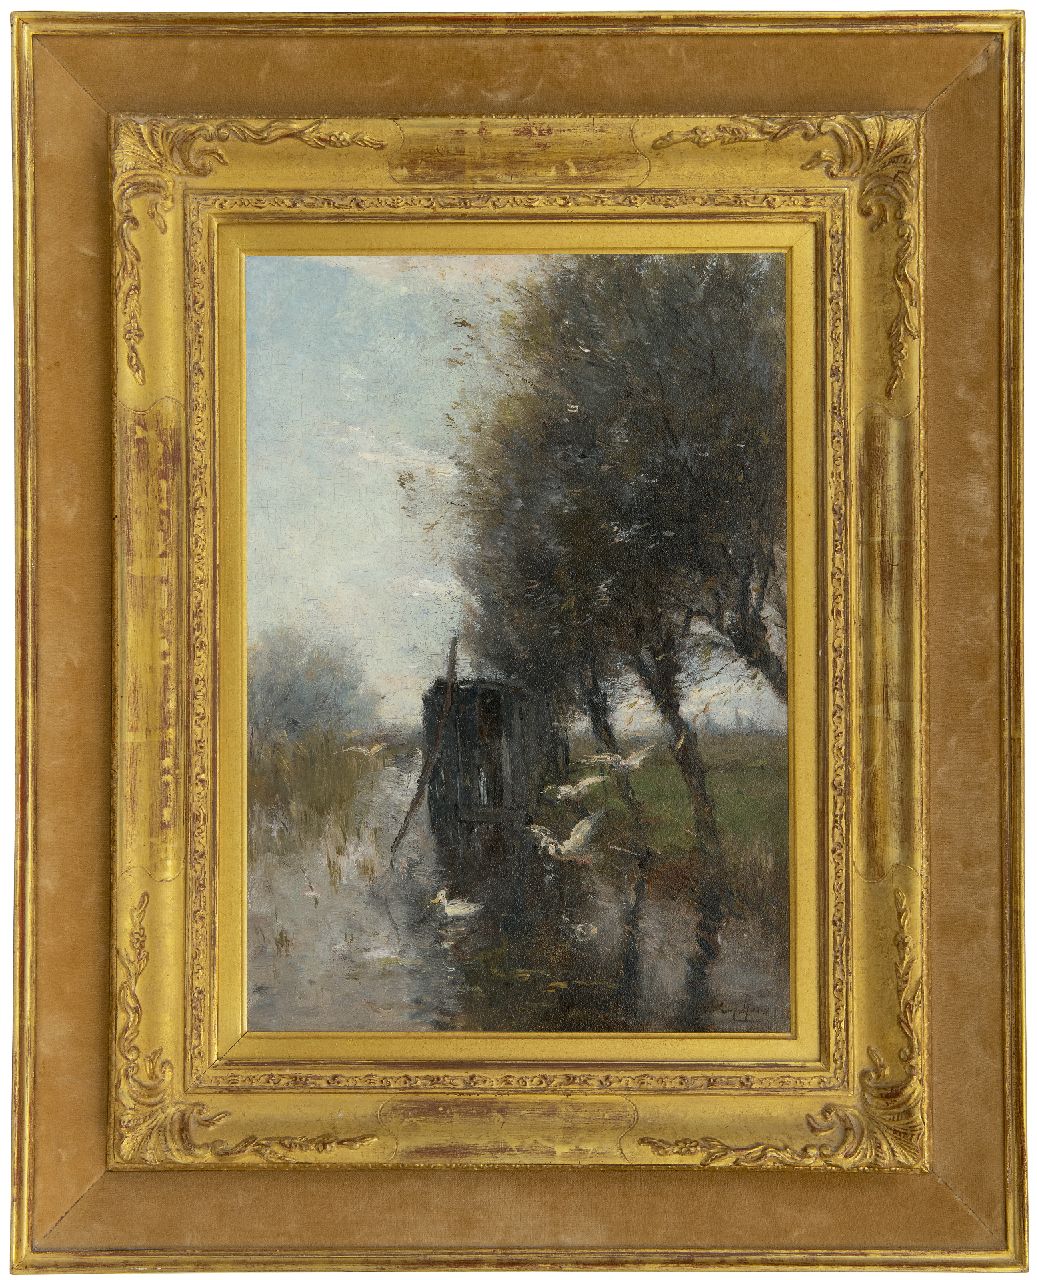 Maris W.  | Willem Maris | Schilderijen te koop aangeboden | Eenden, neerstrijkend op een poldervaart, olieverf op paneel 36,6 x 25,7 cm, gesigneerd rechtsonder